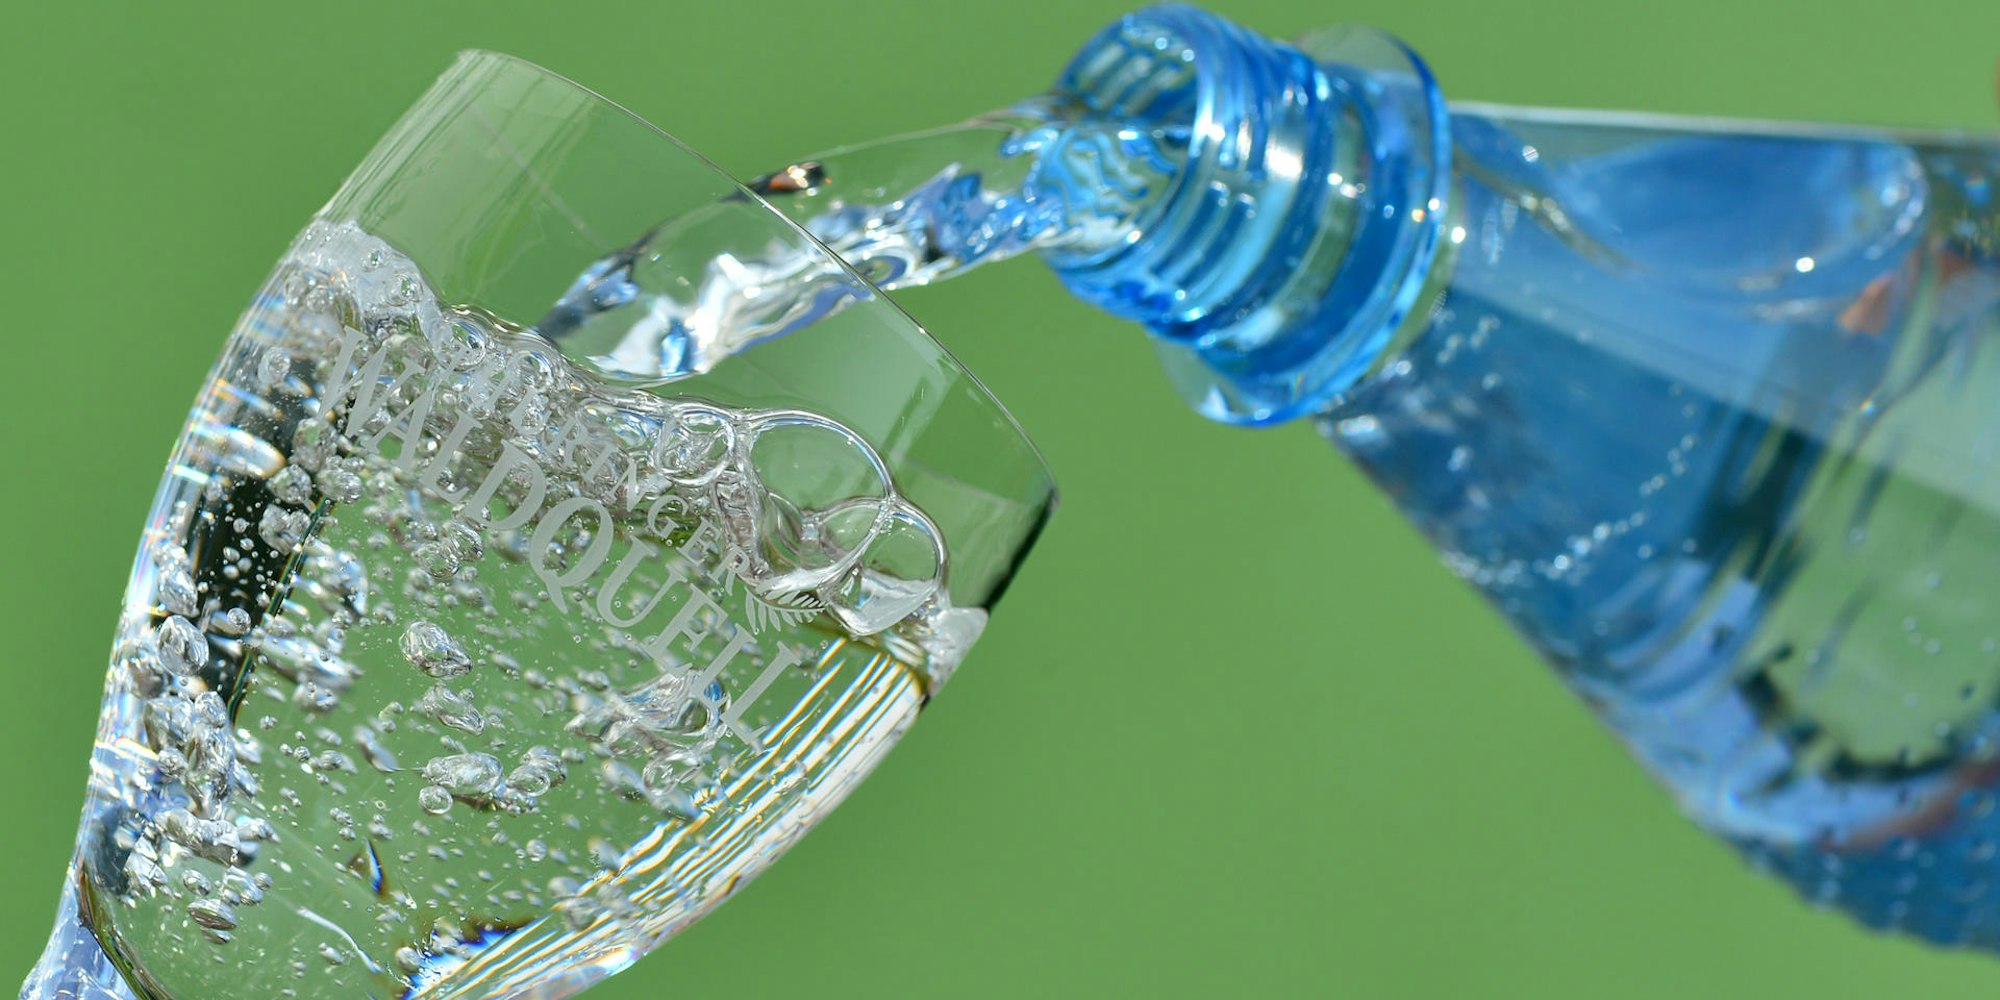 Mineralwasser_Flasche_Glas_dpa